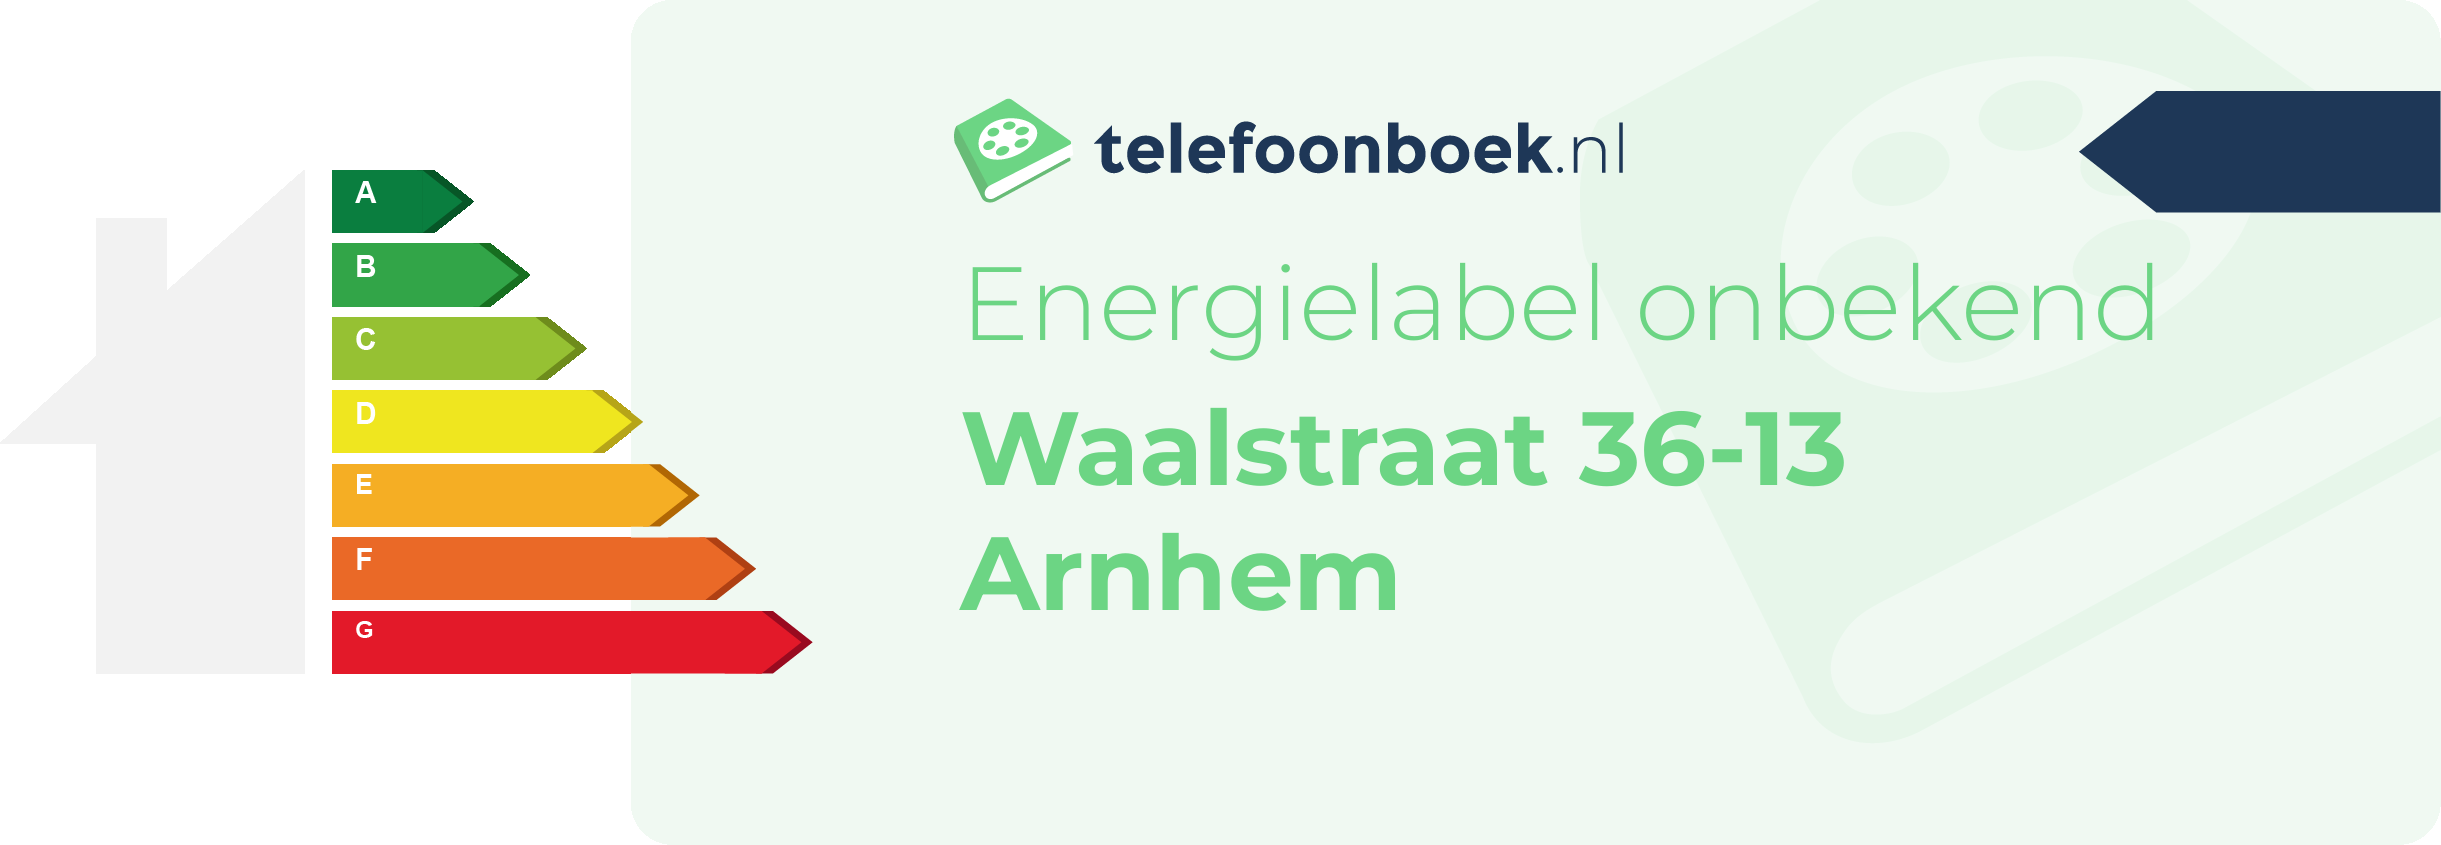 Energielabel Waalstraat 36-13 Arnhem